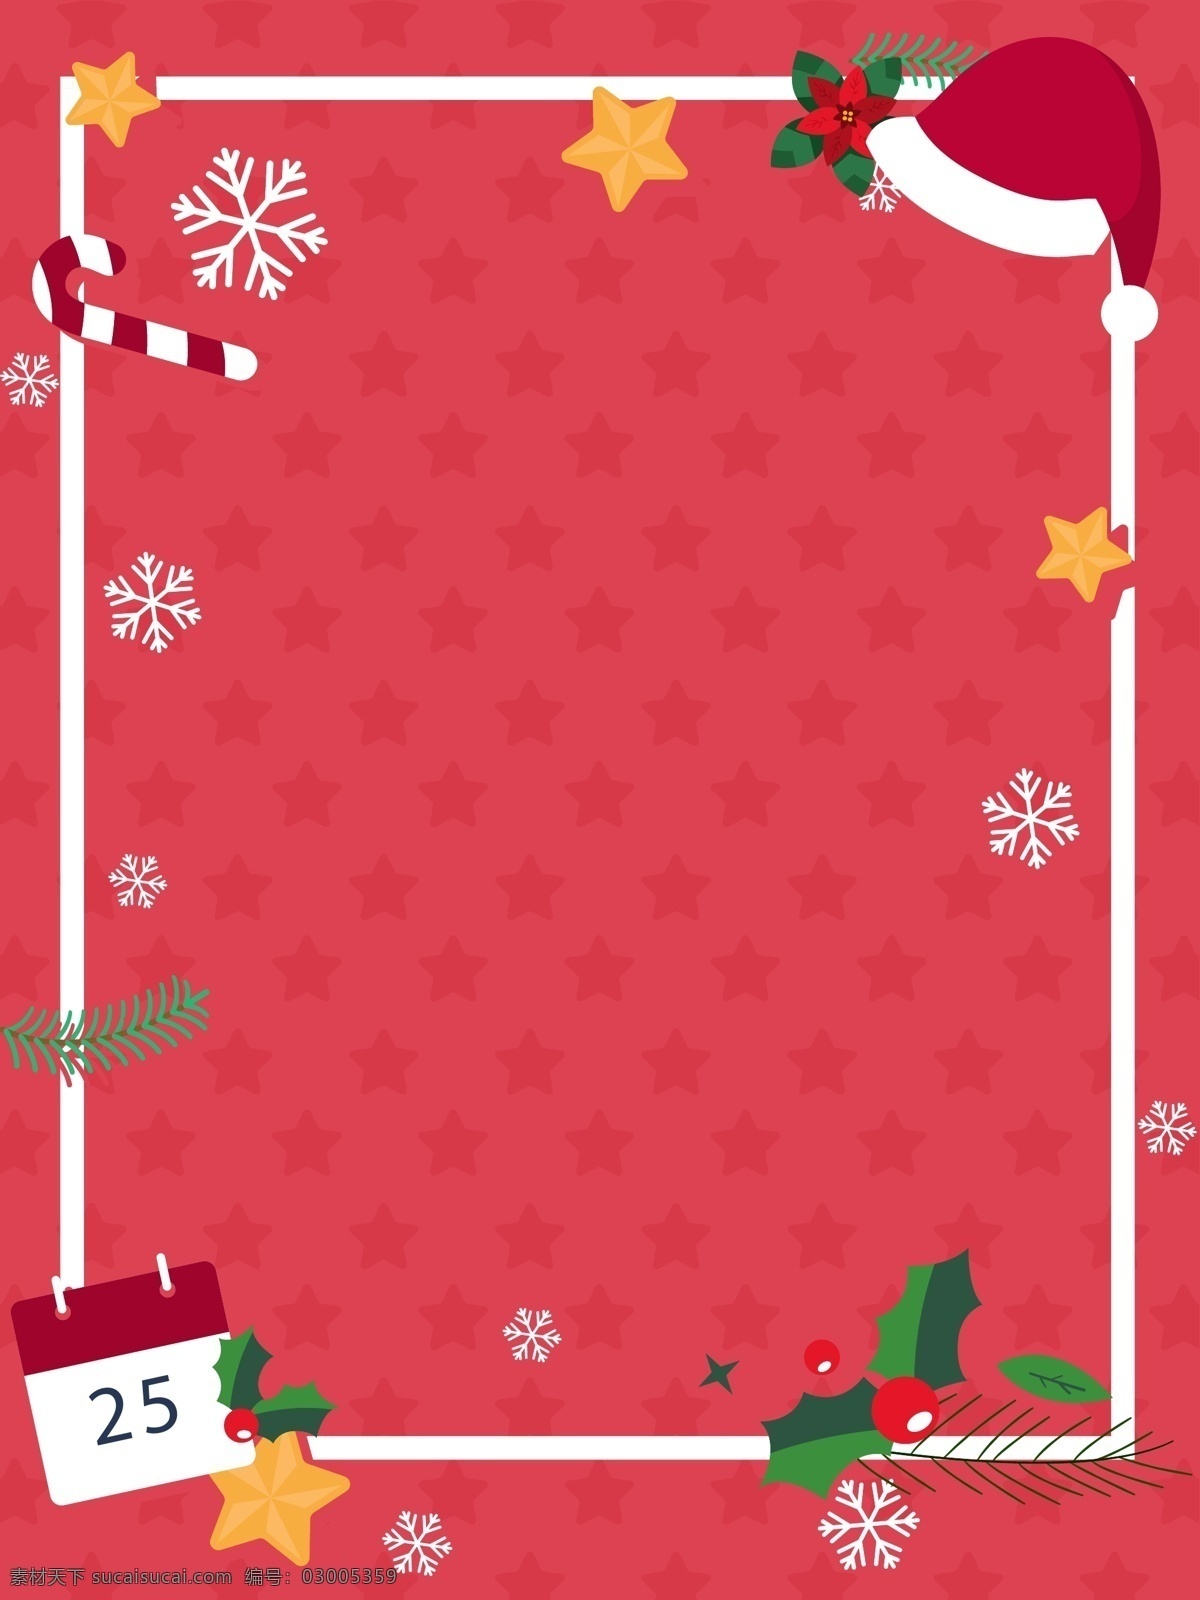 红色 圣诞节 矢量 边框 背景 红色背景 圣诞背景 雪花 矢量图 圣诞节背景 圣诞 圣诞帽 星星背景 矢量边框 星星底纹